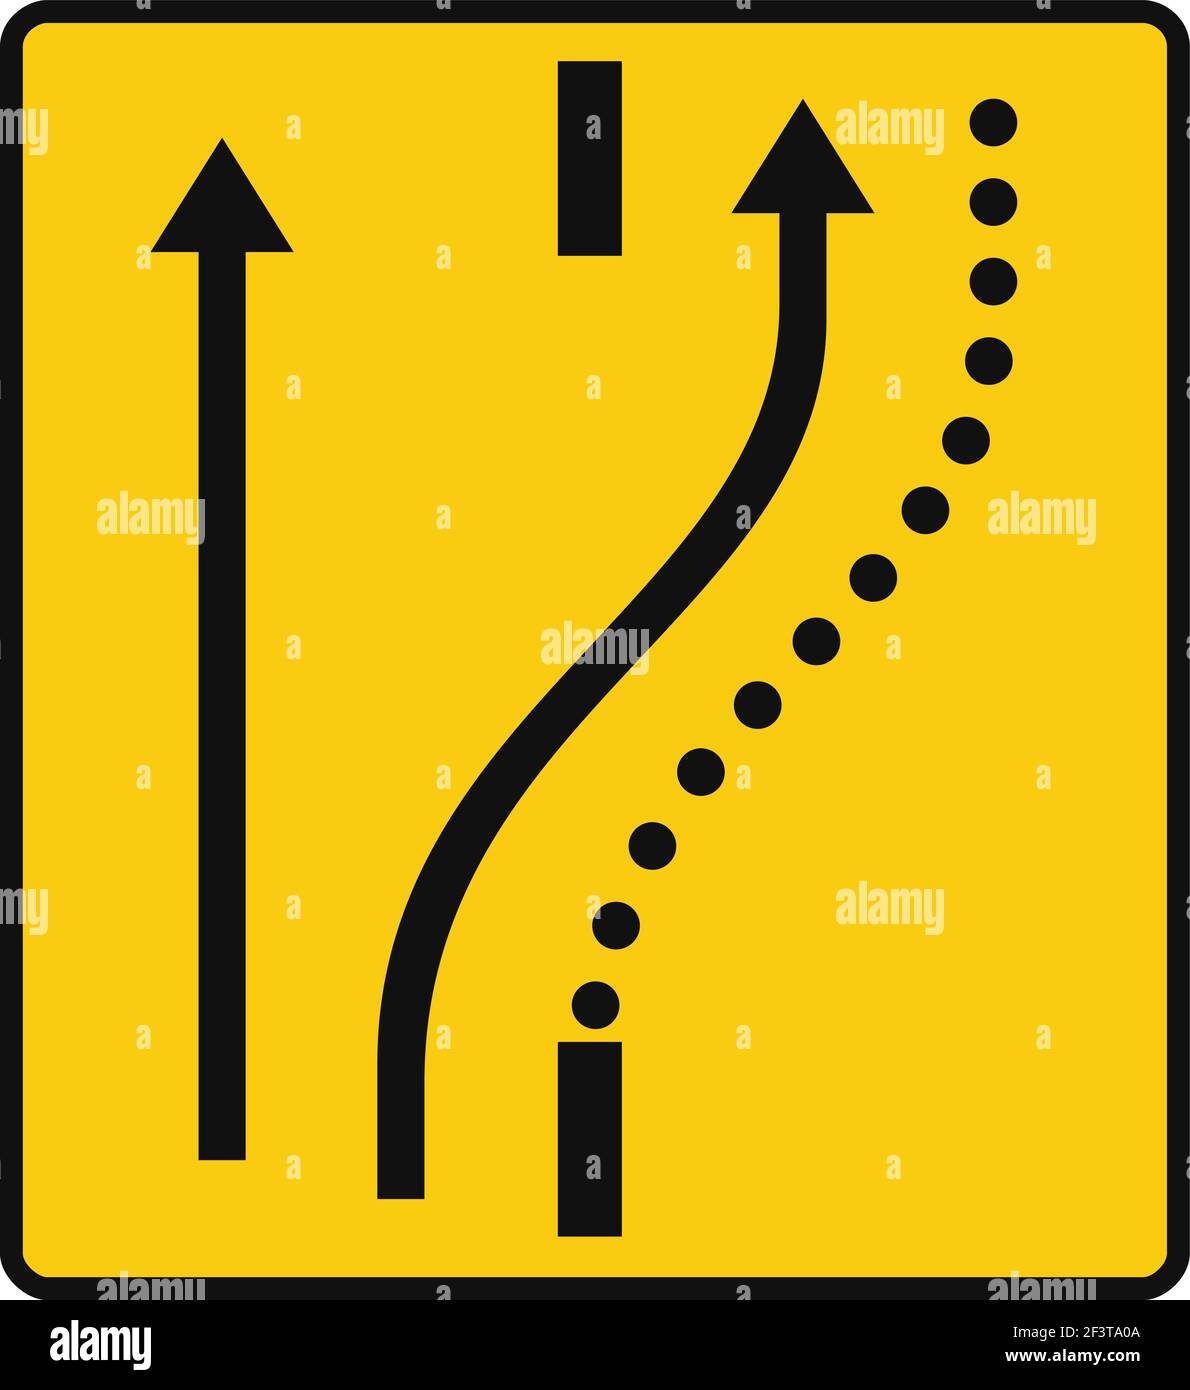 Segnale stradale rettangolare in giallo e nero, isolato su sfondo bianco.  Deviazione temporanea di una corsia sulla strada opposta, mantenendone  un'altra sulla Immagine e Vettoriale - Alamy